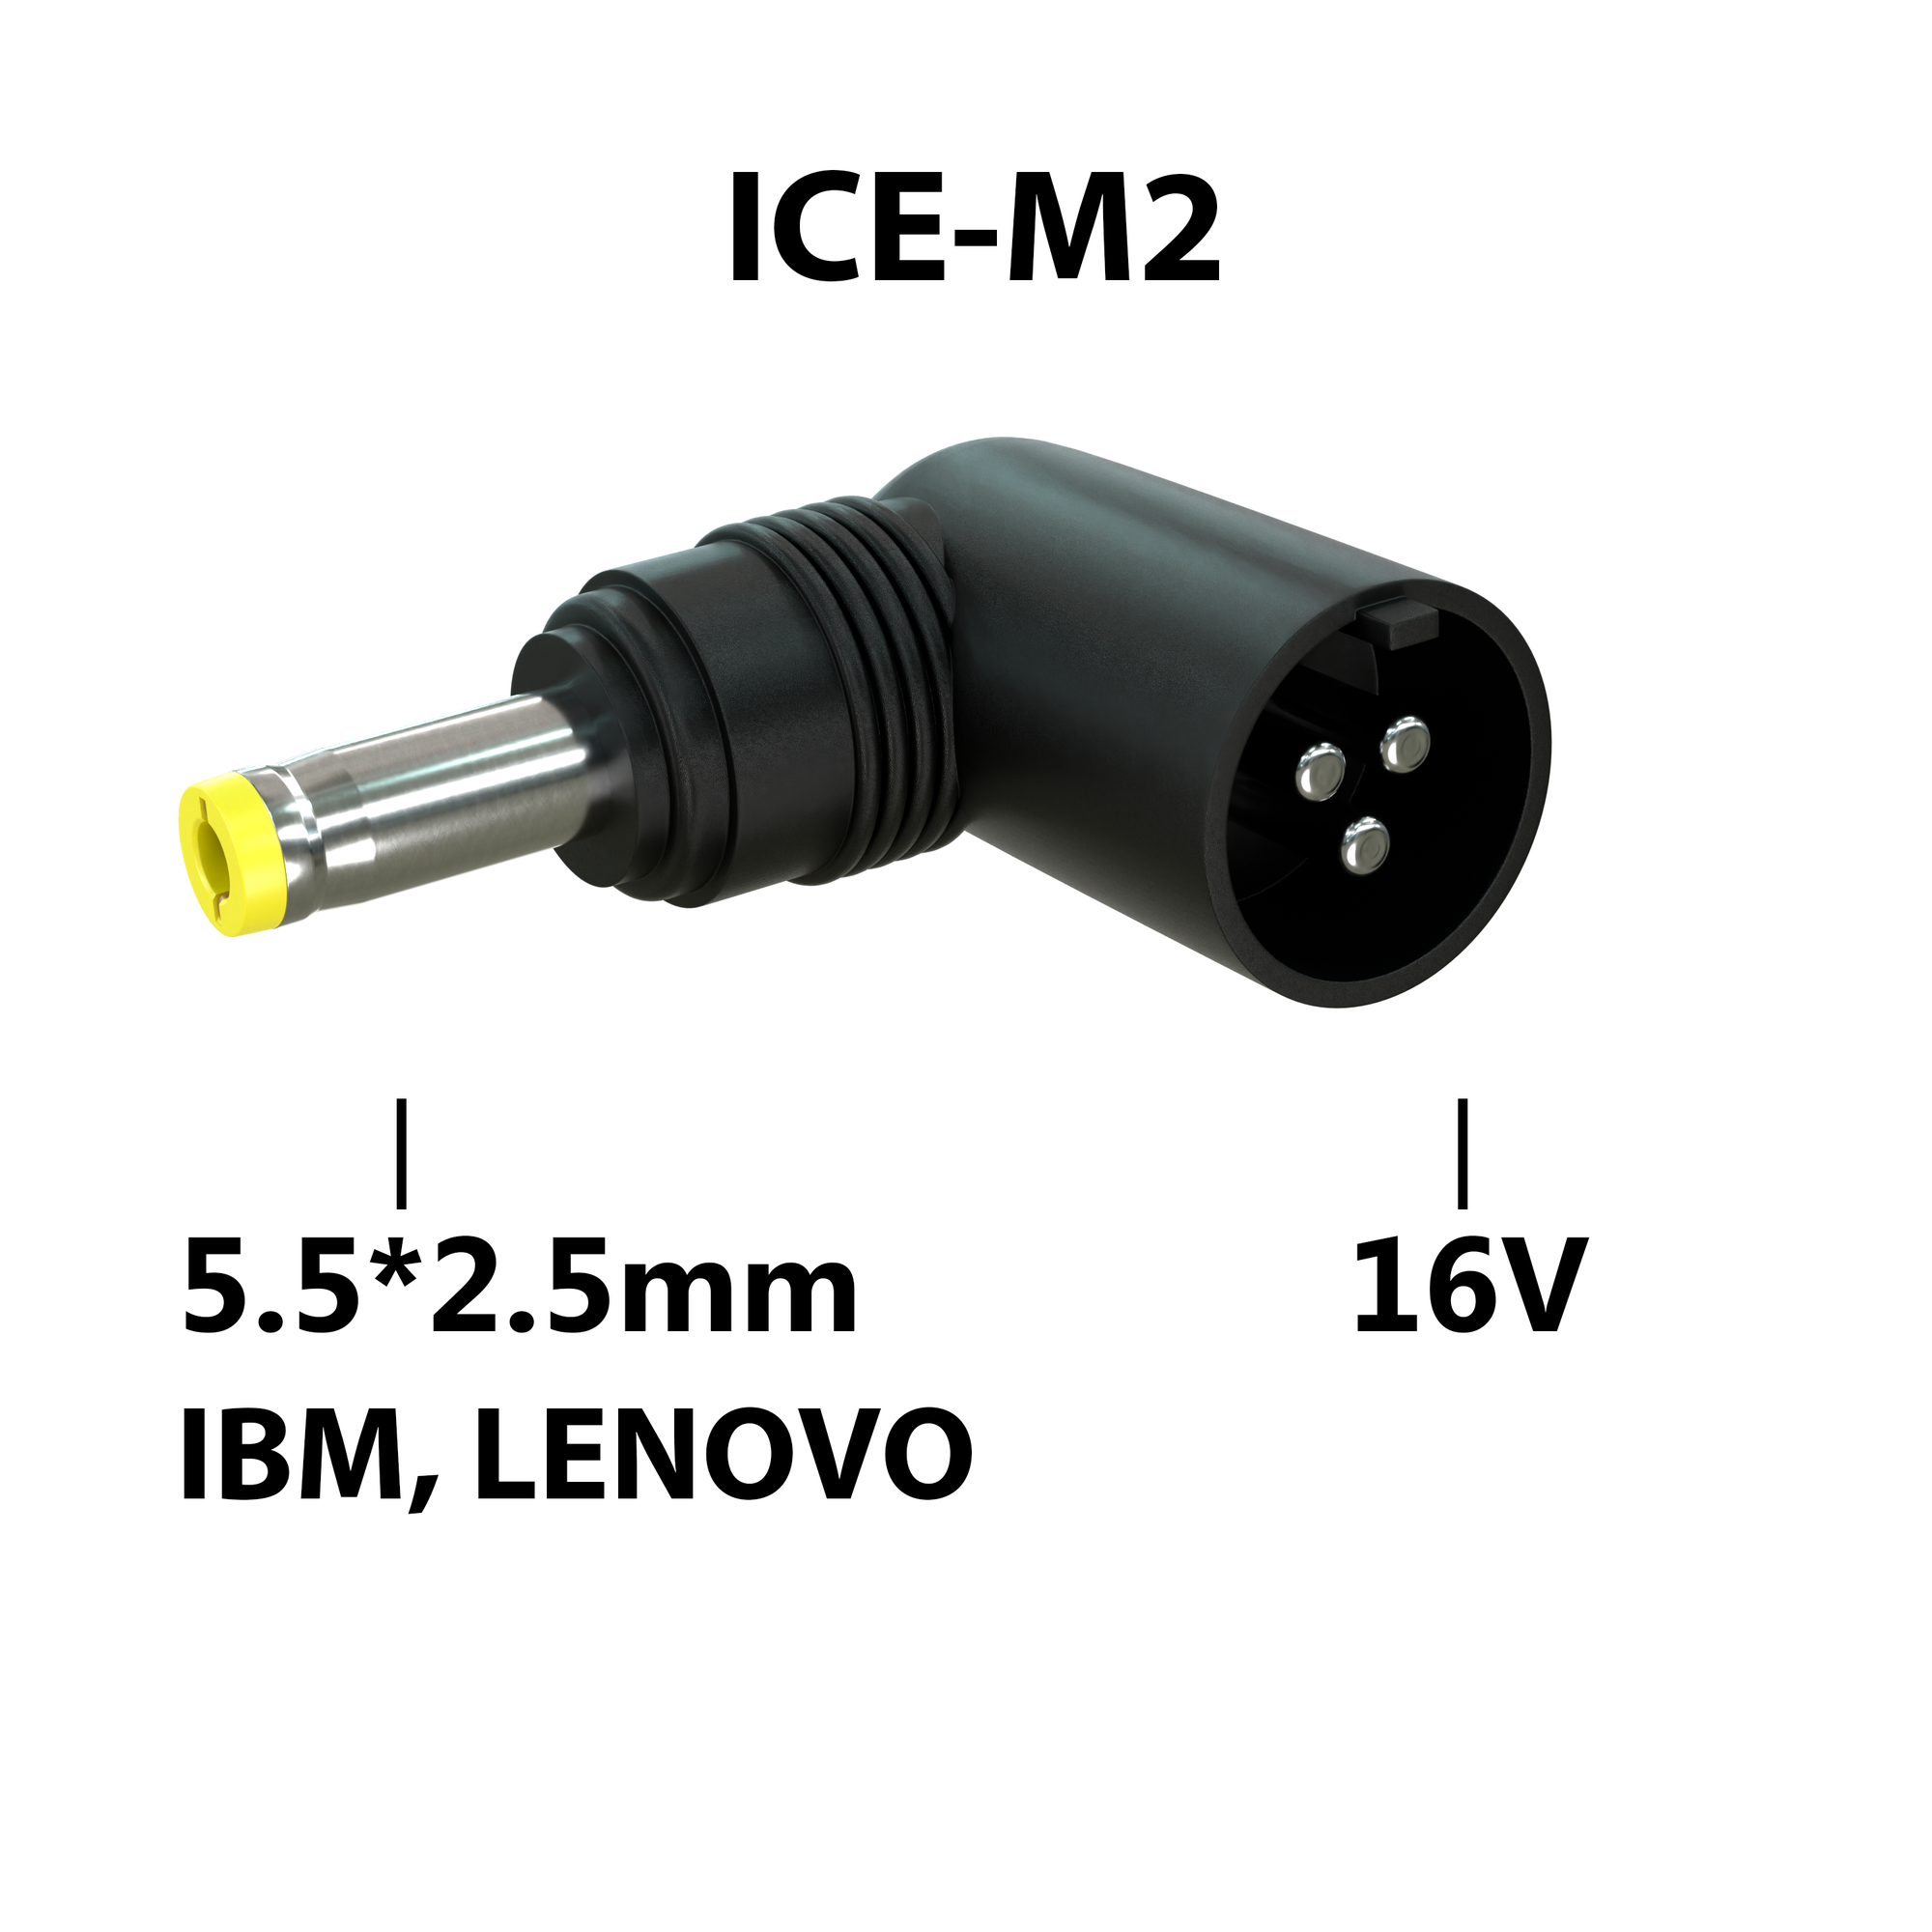 Коннектор адаптер переходник питания для ноутбуков IBM Lenovo ICEPAD ICE-M2 гнездо 3 pin 16V - штекер 55*25 mm угловой